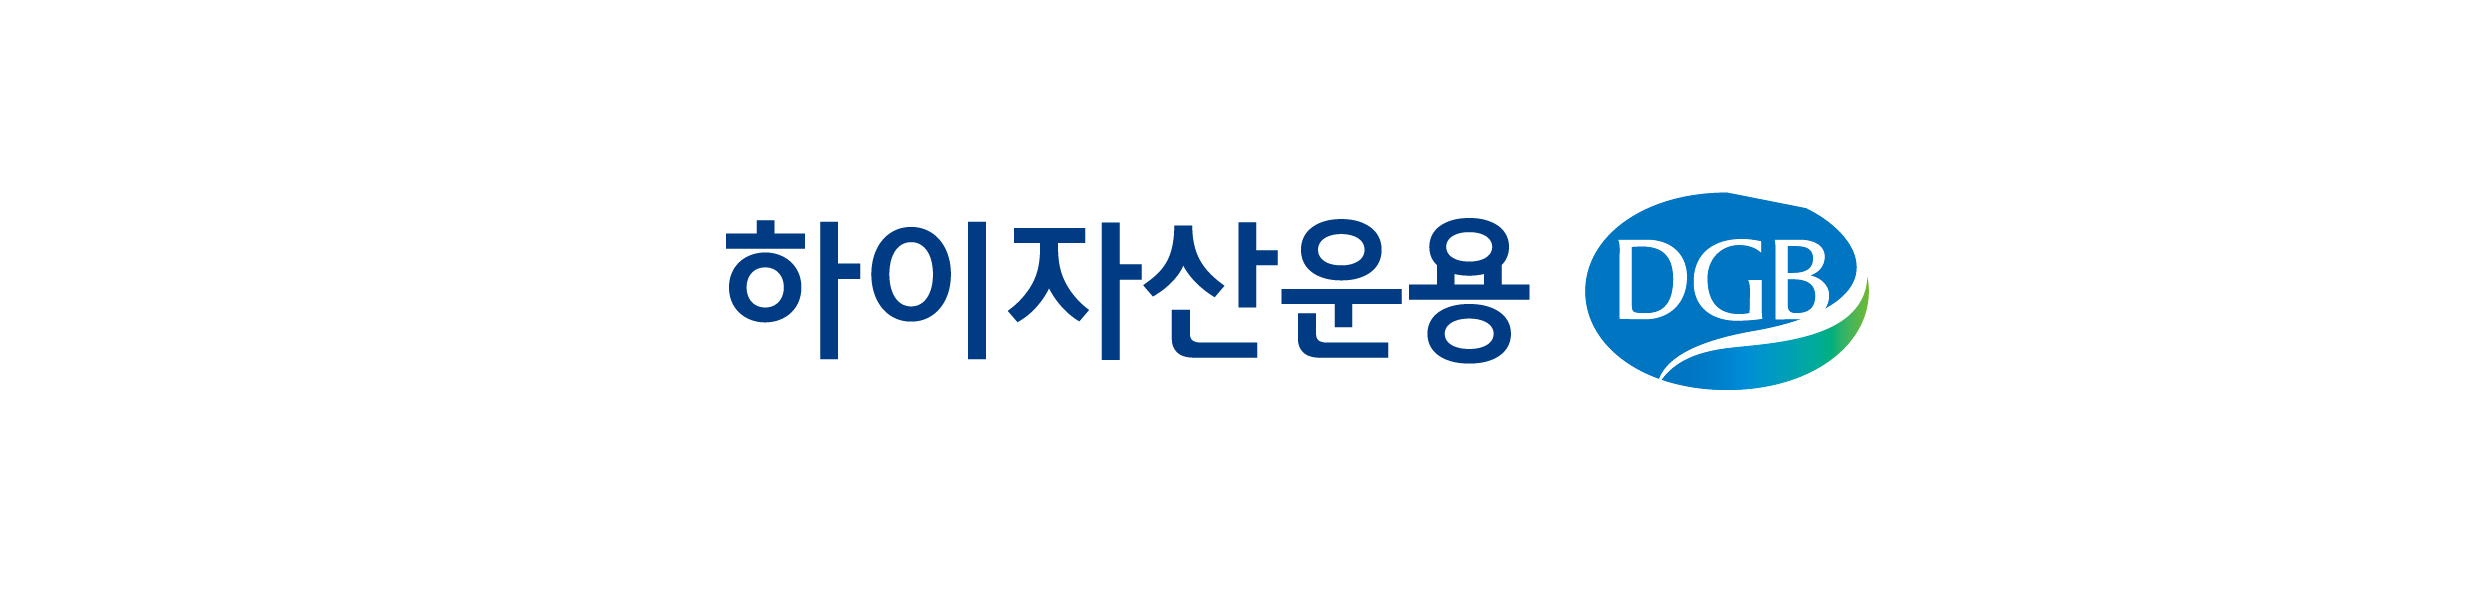 DGB금융지주의 계열사 하이자산운용(주)의 로고